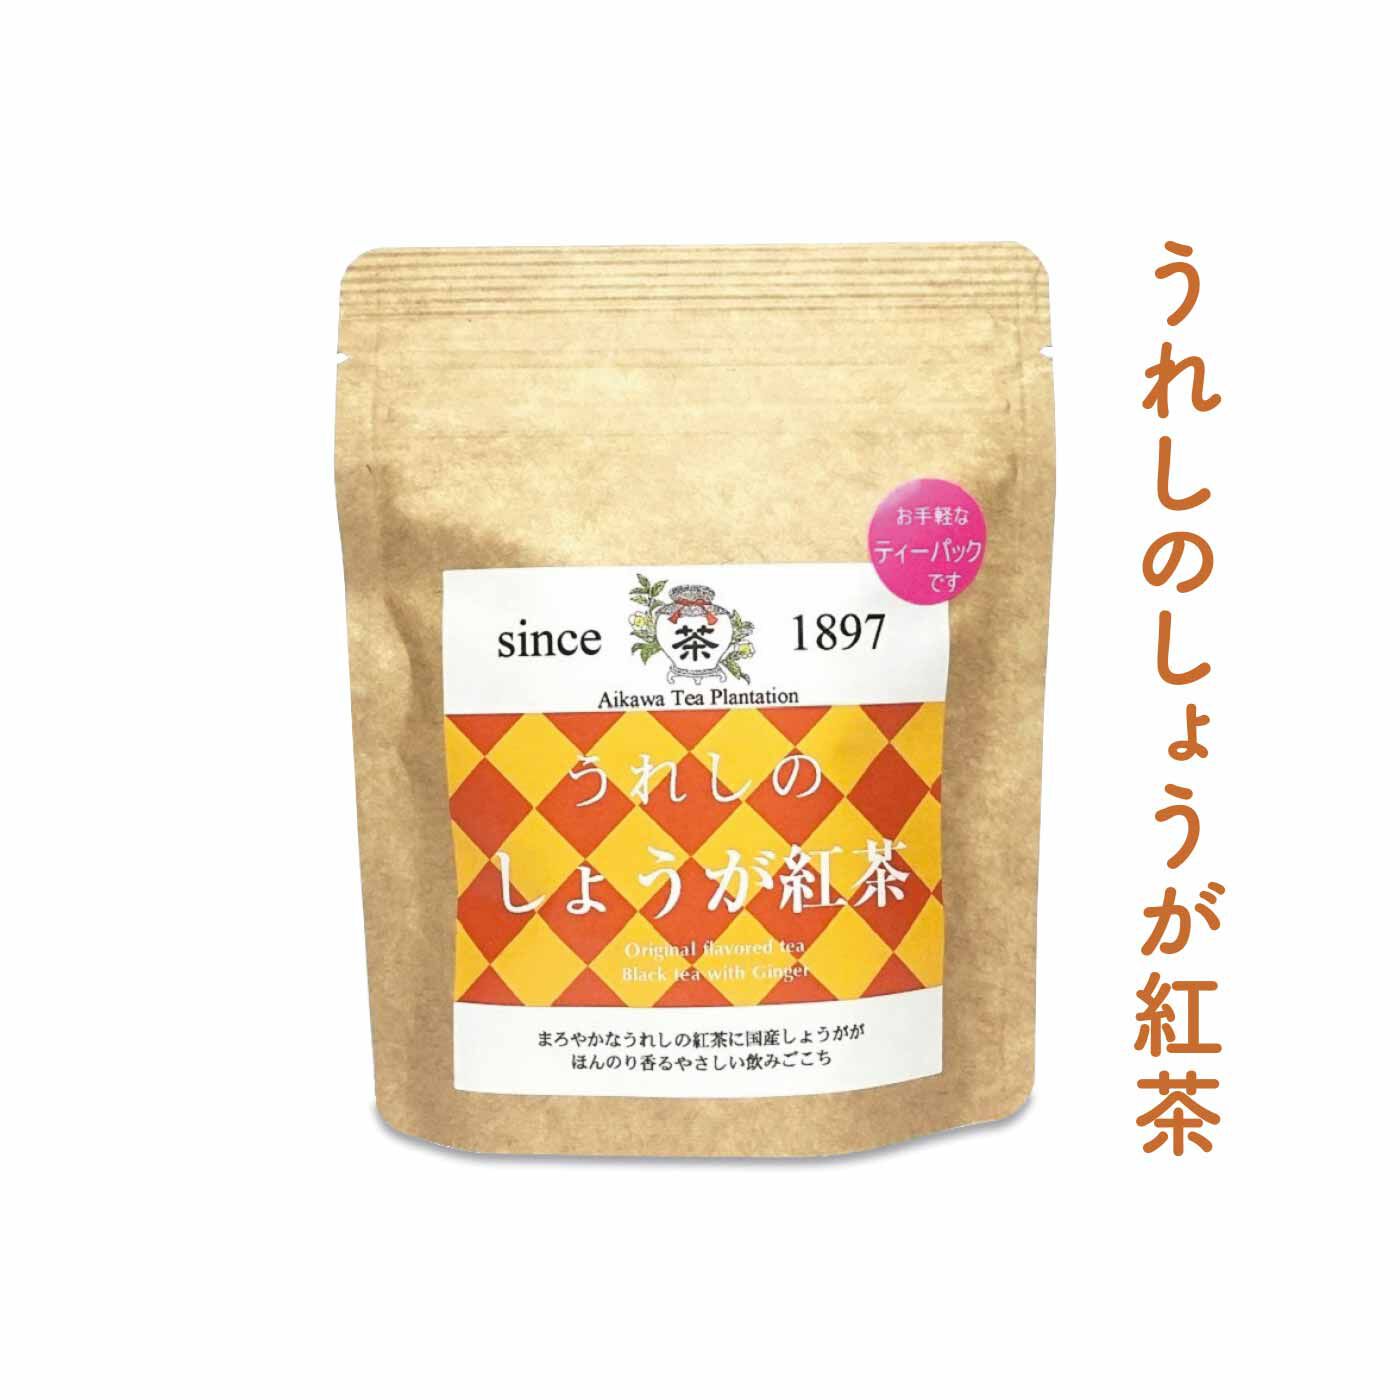 FELISSIMO PARTNERS|佐賀 相川製茶舗 いろんな味わいが楽しい うれしの茶の会（12回予約）|佐賀県産しょうがのほどよい刺激。